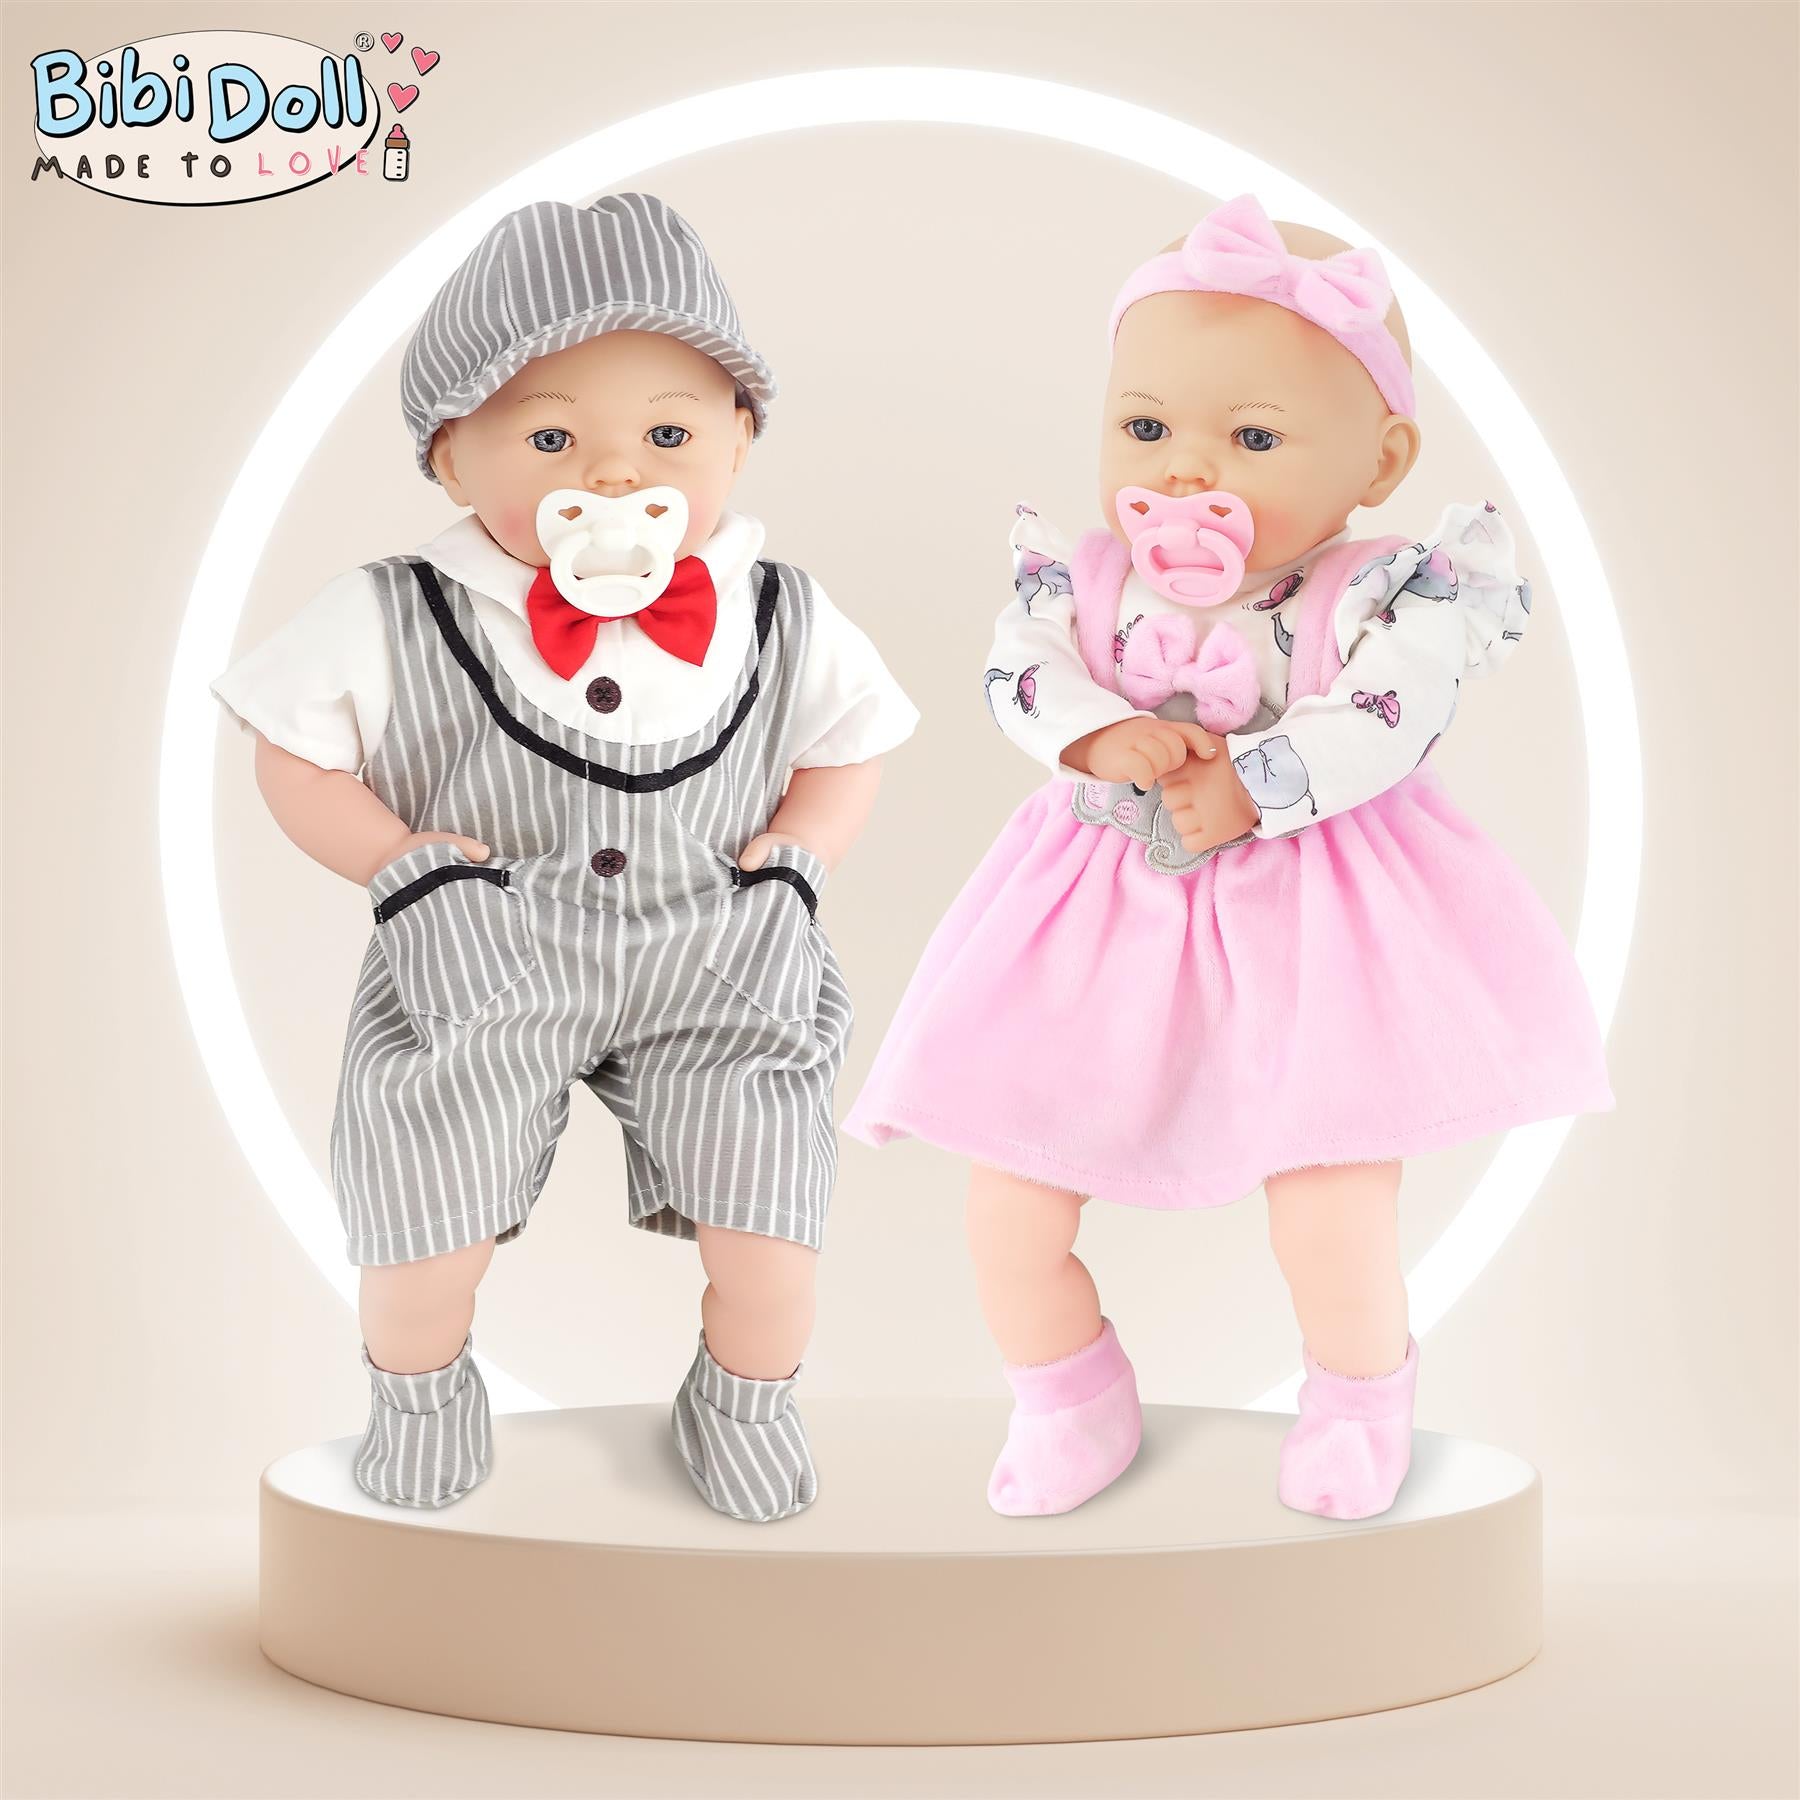 BiBi Baby Doll - Ellie (45 cm / 18") by BiBi Doll - UKBuyZone